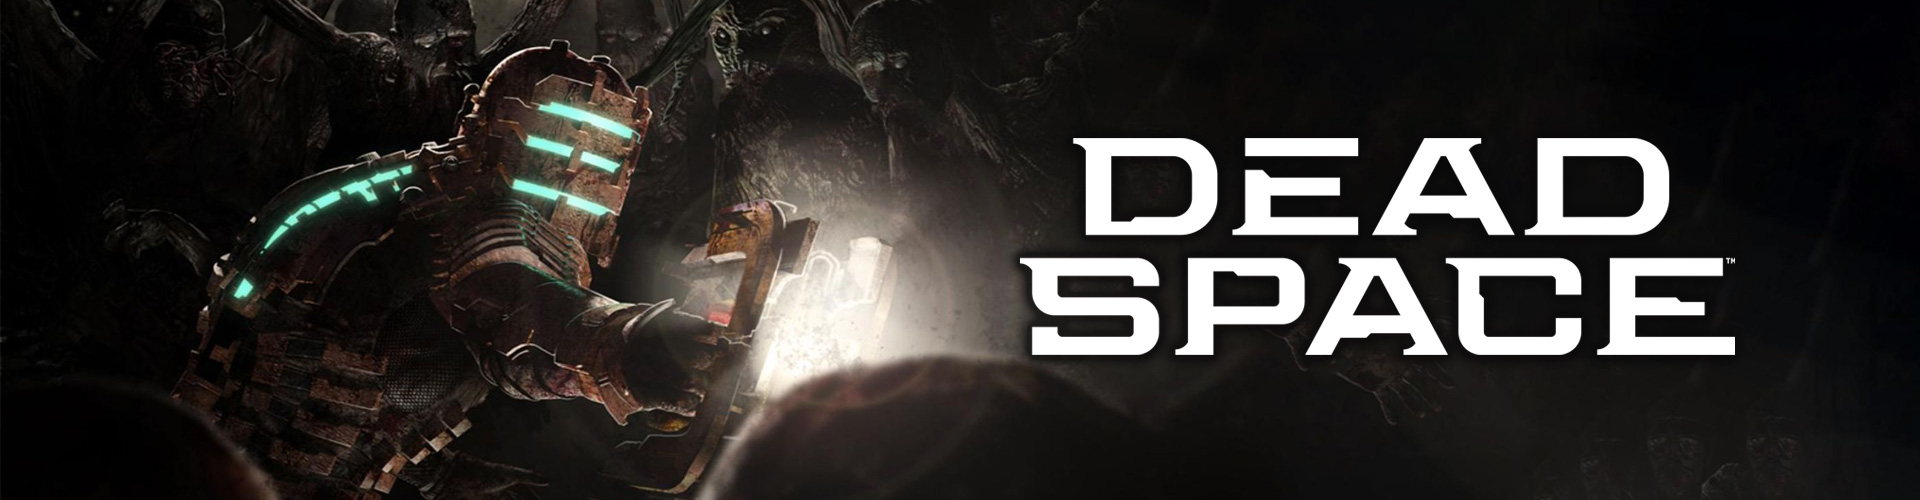 Dead Space : un gioco survival horror di fantascienza in terza persona